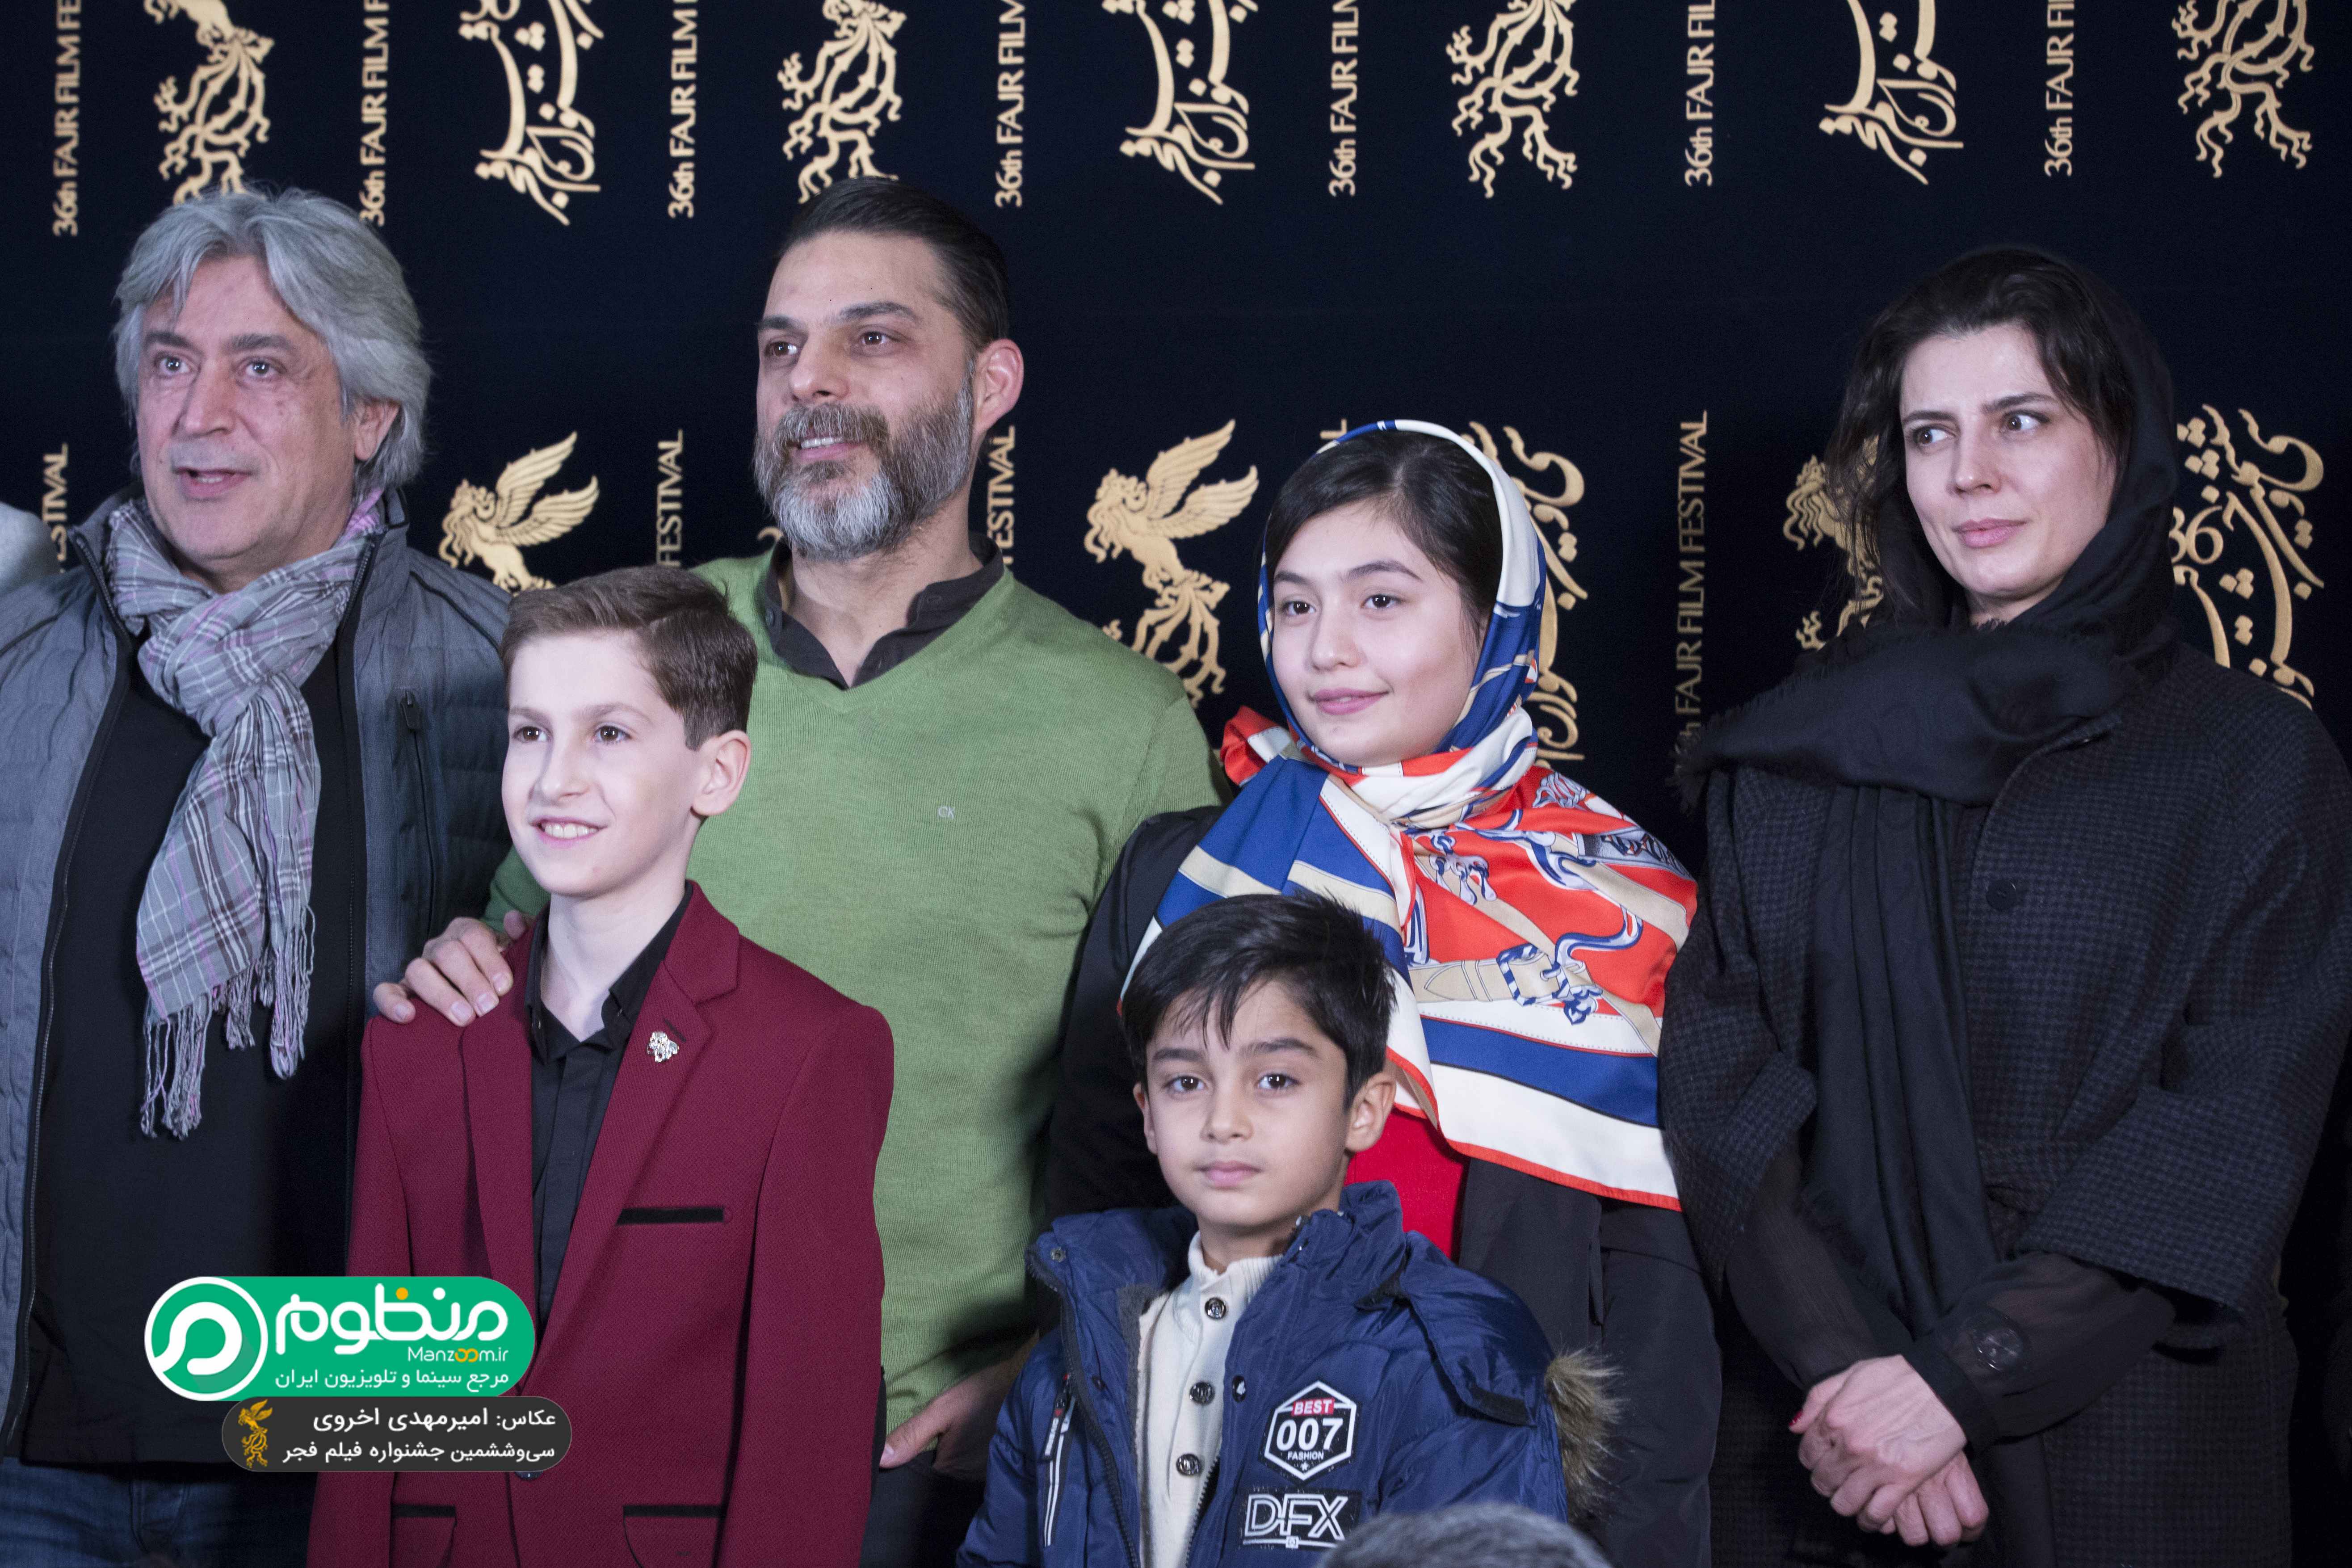 لیلا حاتمی در جشنواره فیلم سینمایی بمب؛ یک عاشقانه به همراه ارشیا عبداللهی، ایرج شهزادی، پیمان معادی و باران معادی